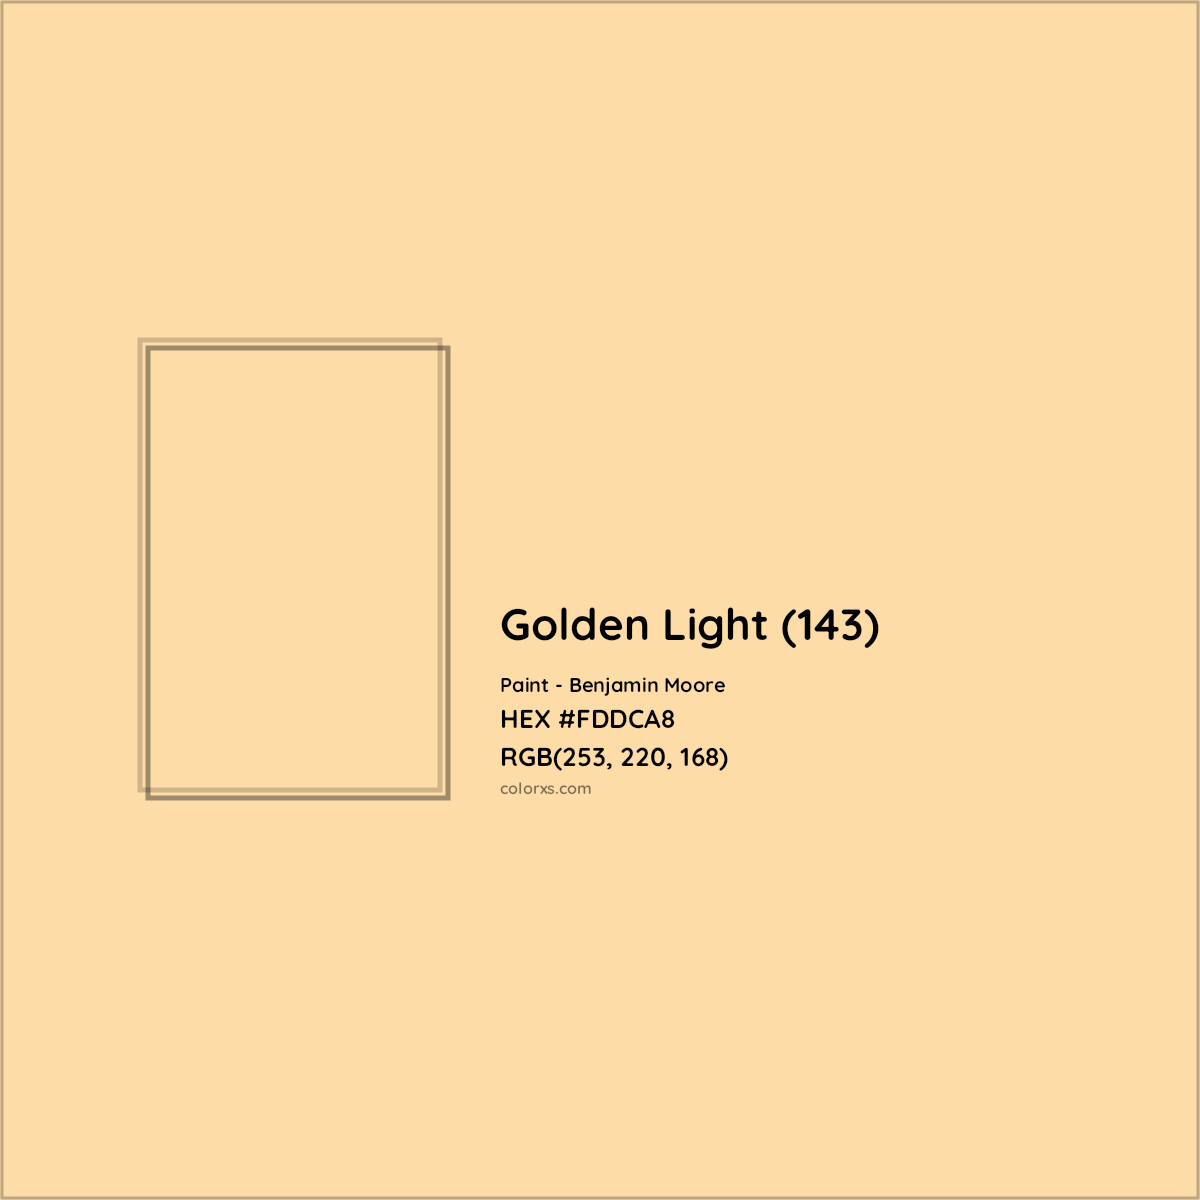 HEX #FDDCA8 Golden Light (143) Paint Benjamin Moore - Color Code